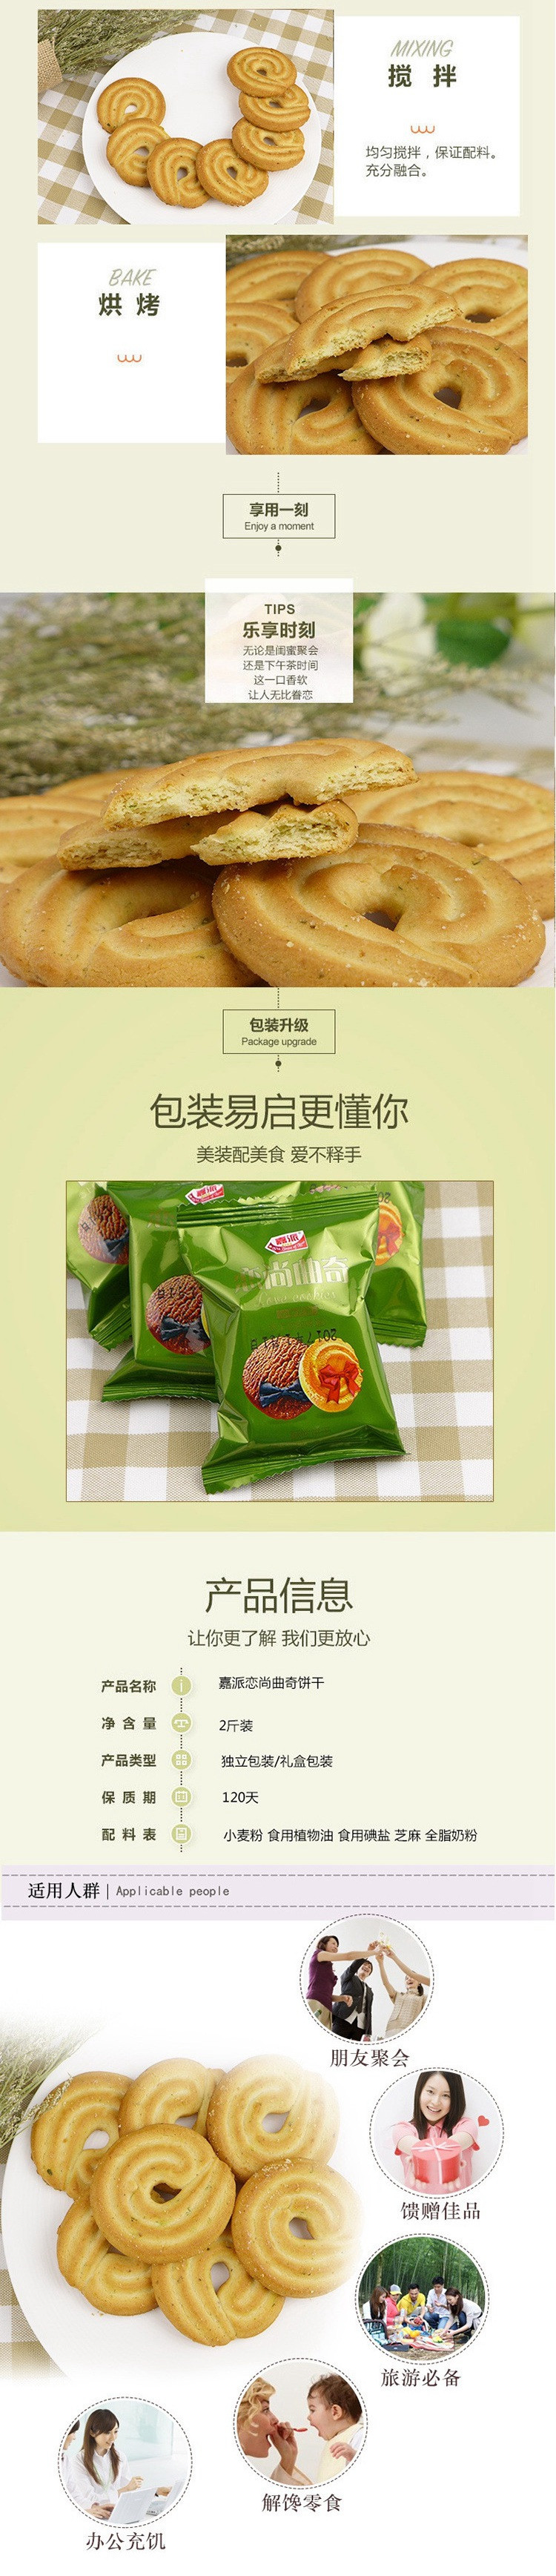 【邮乐新乡馆】嘉派恋上曲奇酥性饼干2斤装 传统美食小吃零食糕点